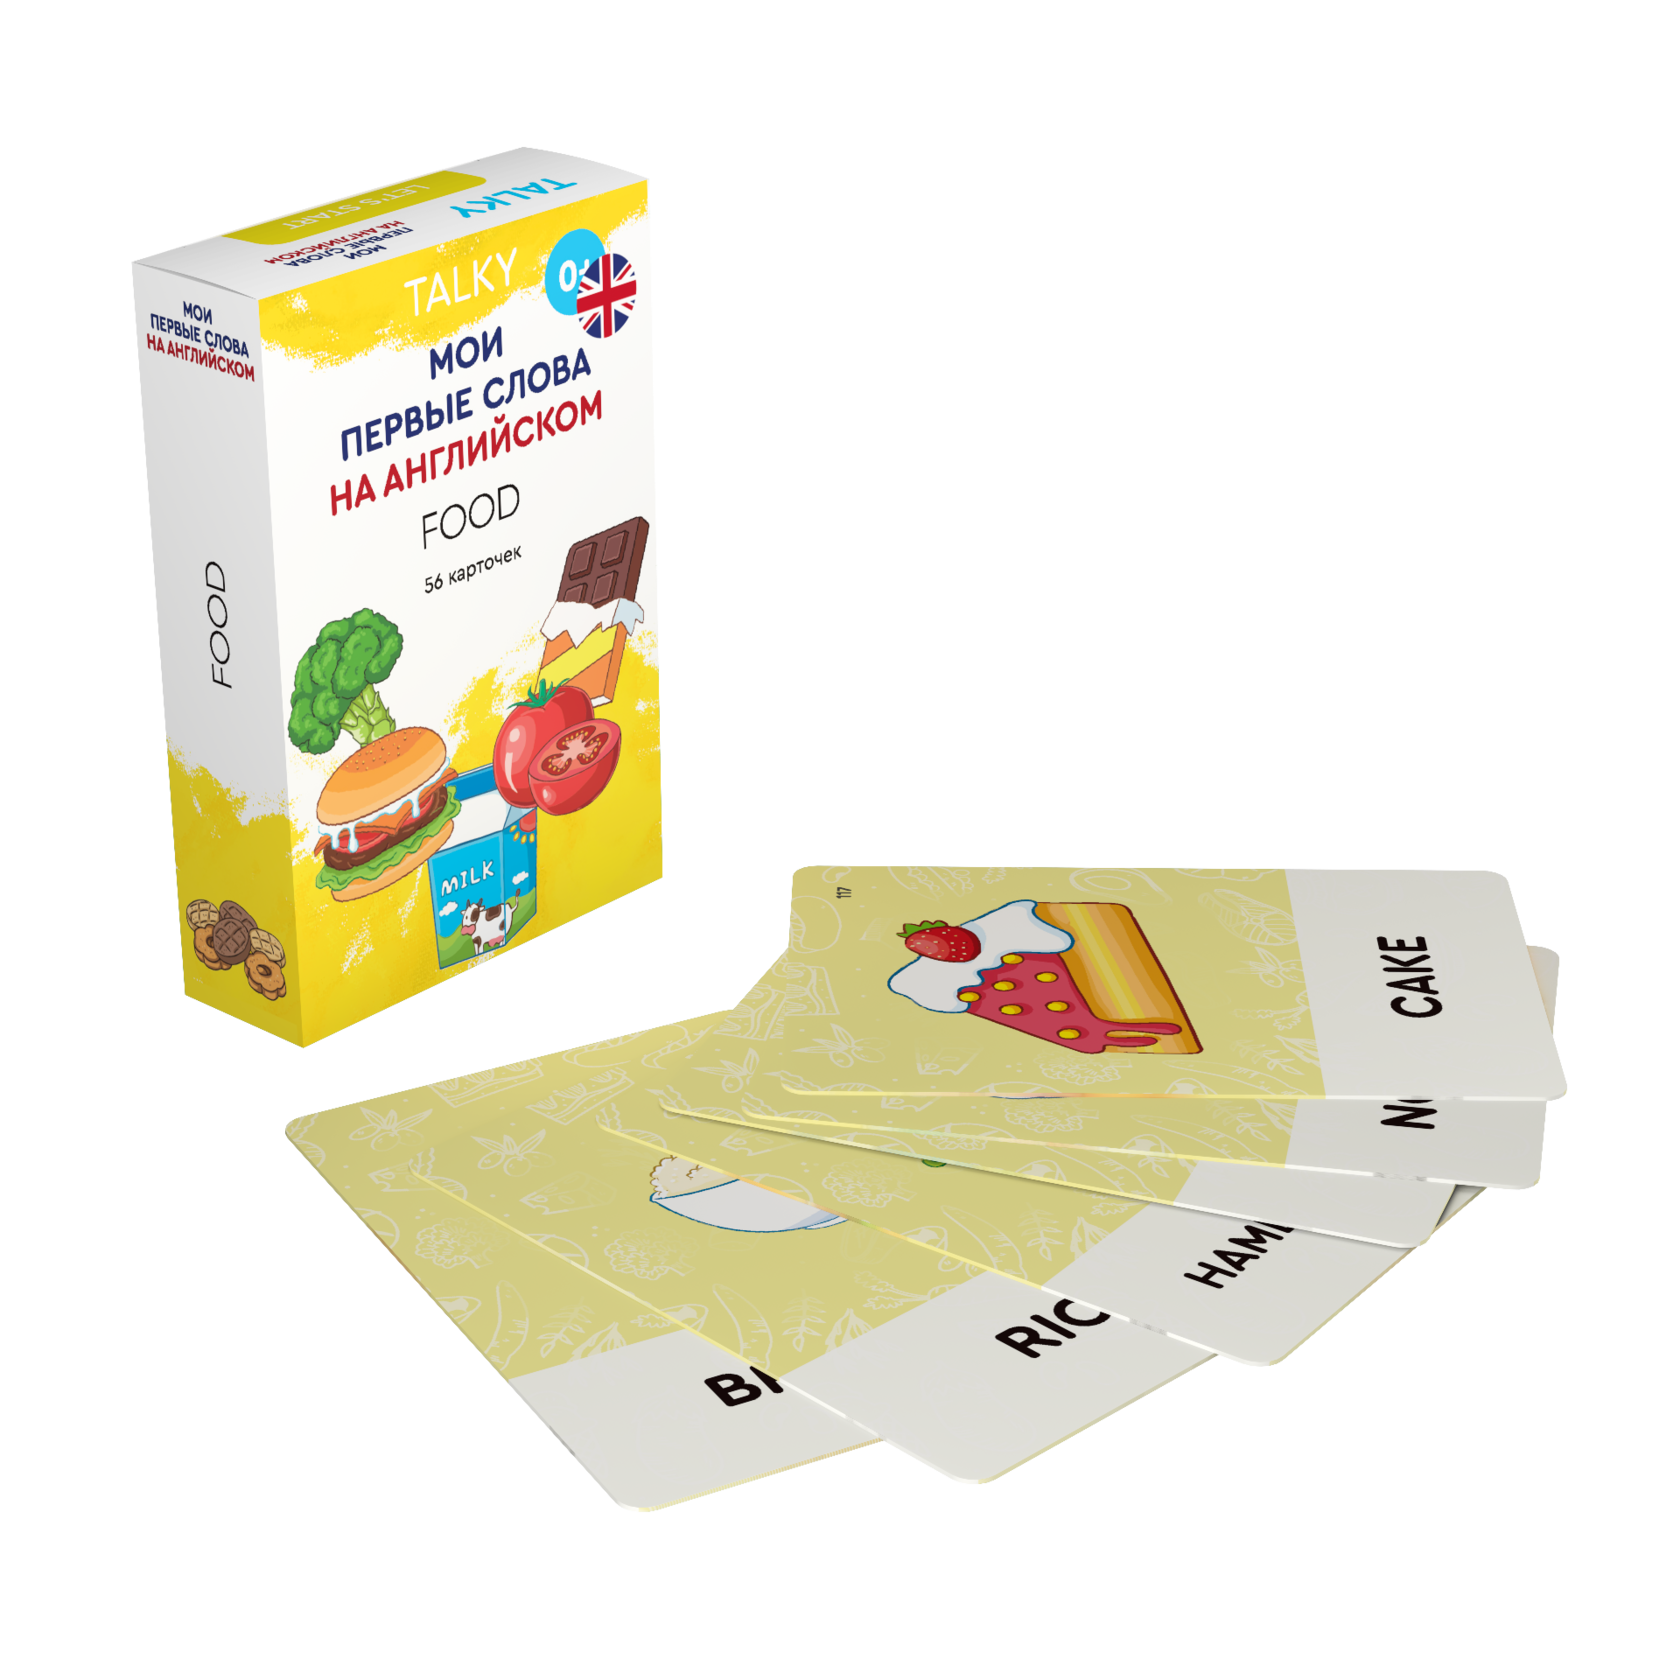 Развивающие карточки для детей LUMICUBE для TALKY, на англ. языке, еда, 56шт. KDTKE02-FOOD lumicube умные карточки talky на русском и английском языке анатомия 68 шт